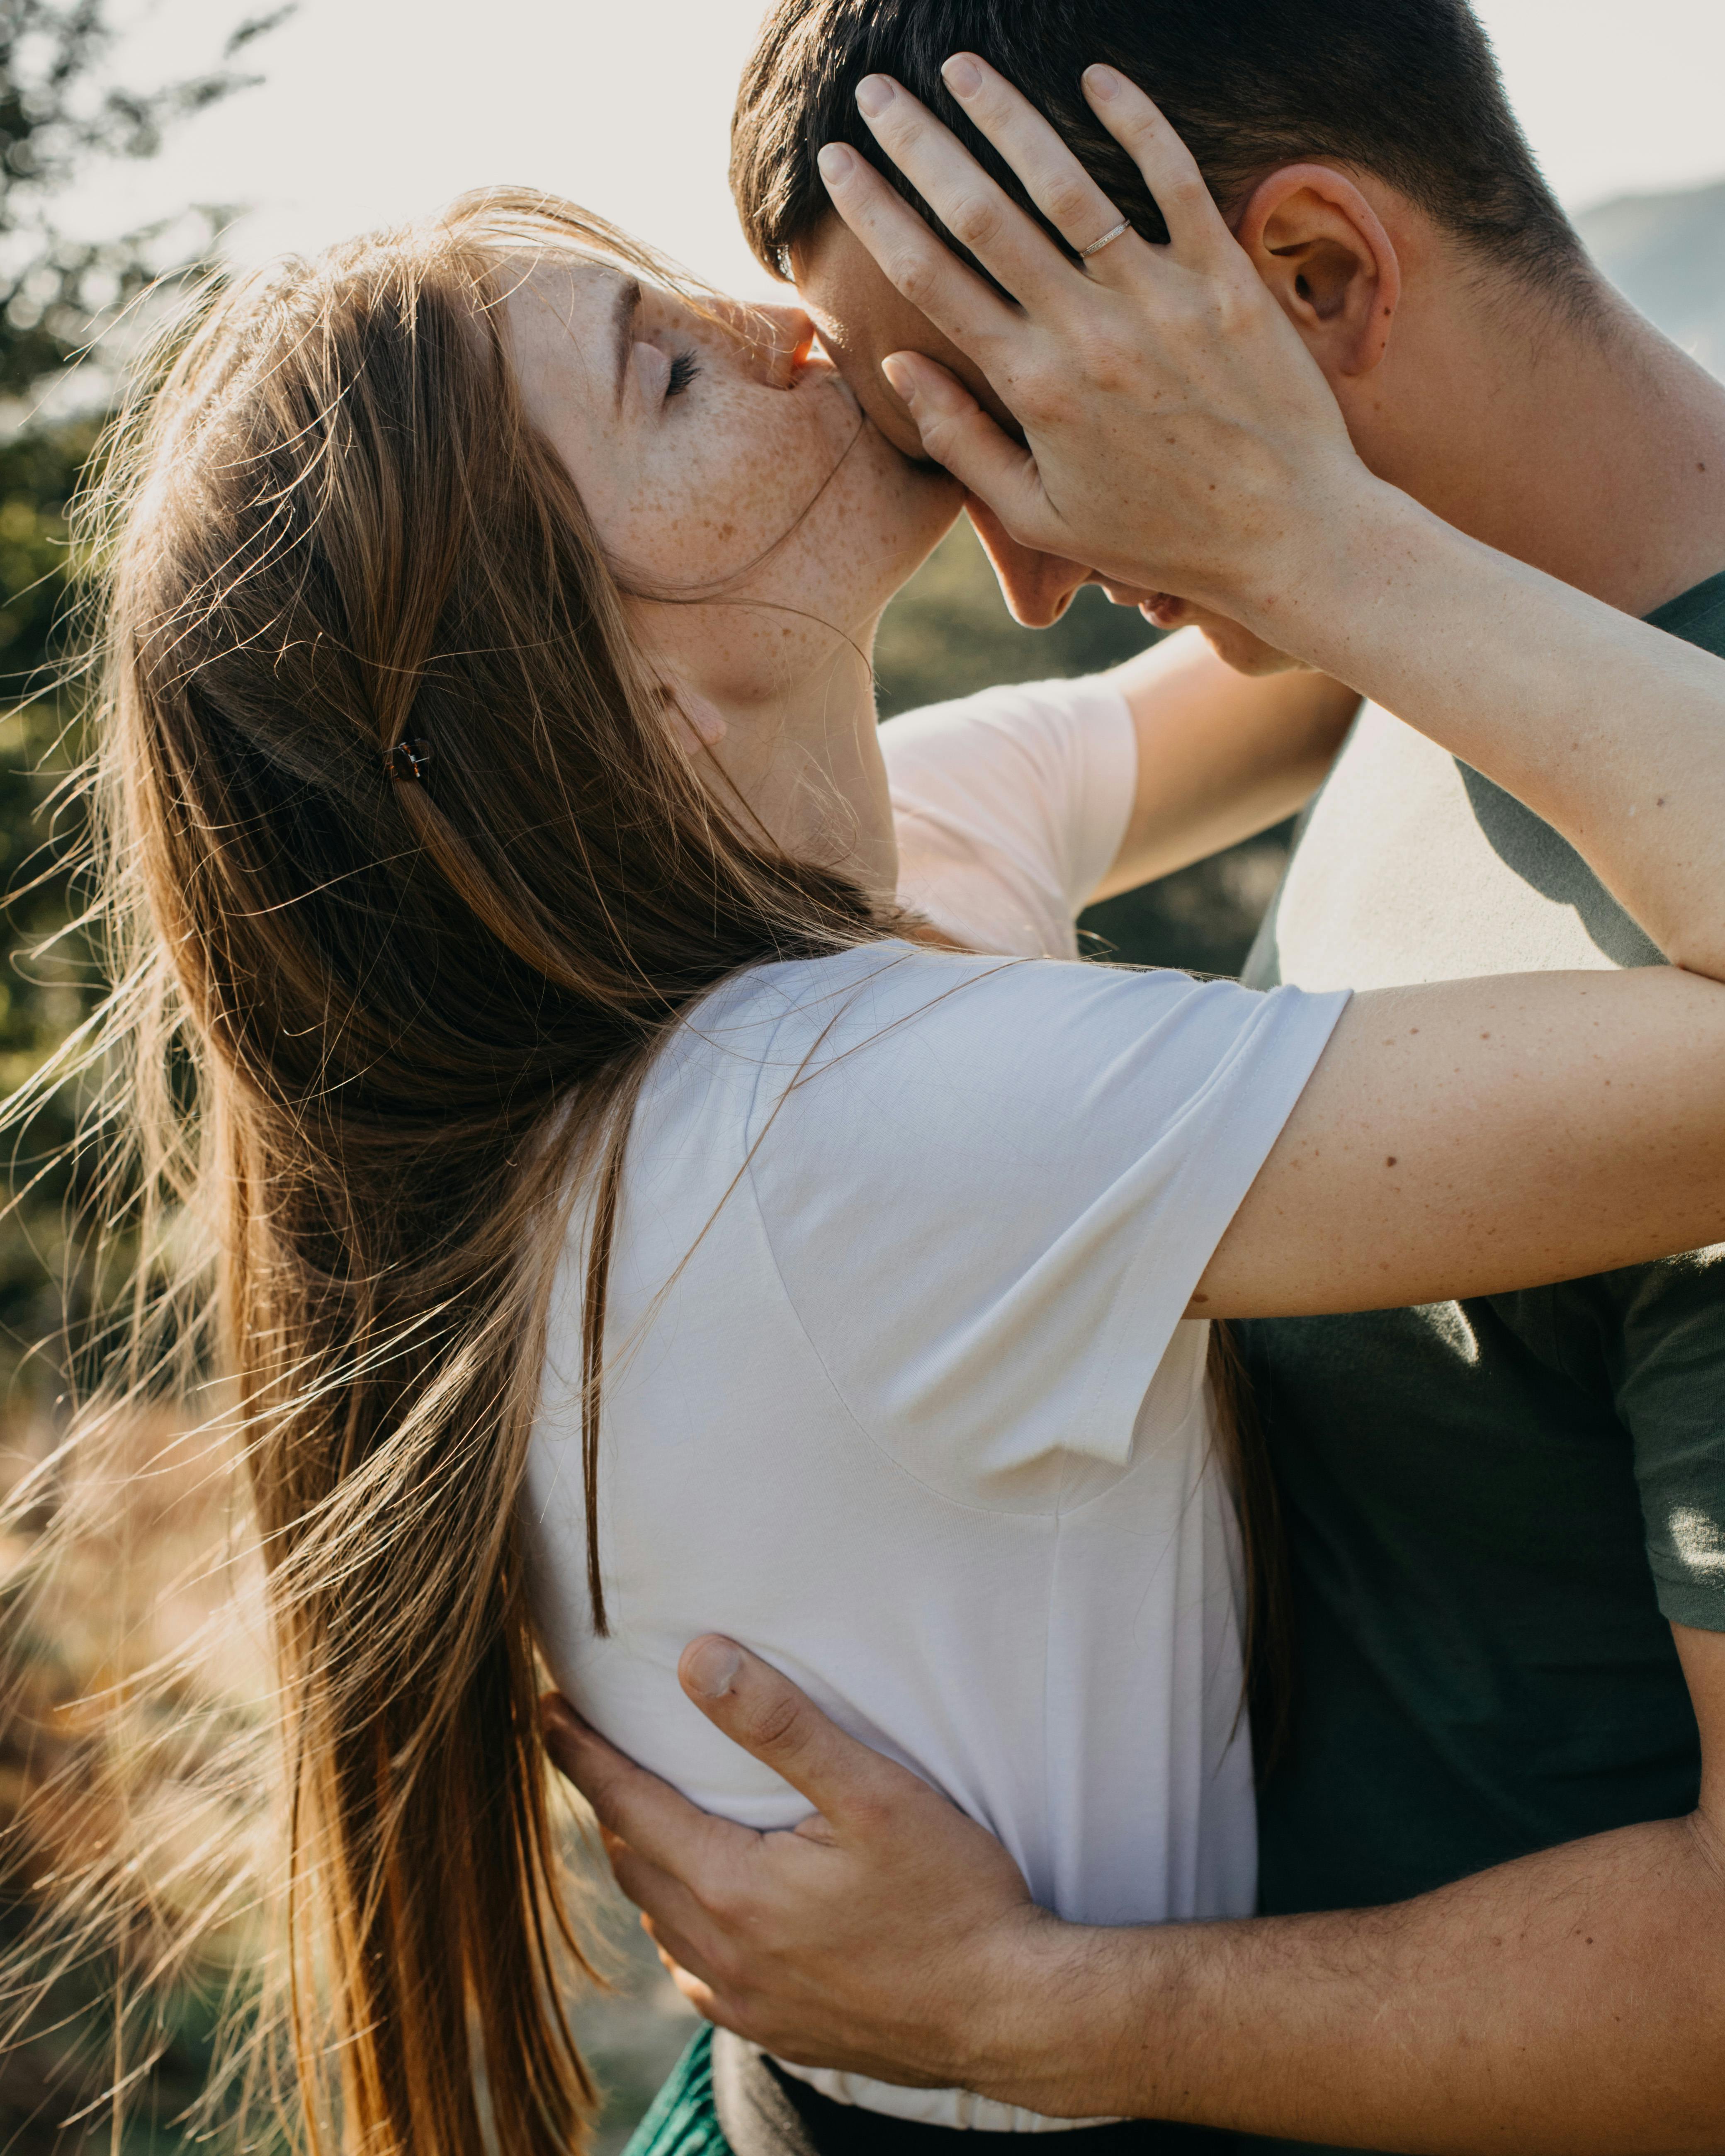 Eine Frau küsst ihren Partner auf die Stirn | Quelle: Pexels